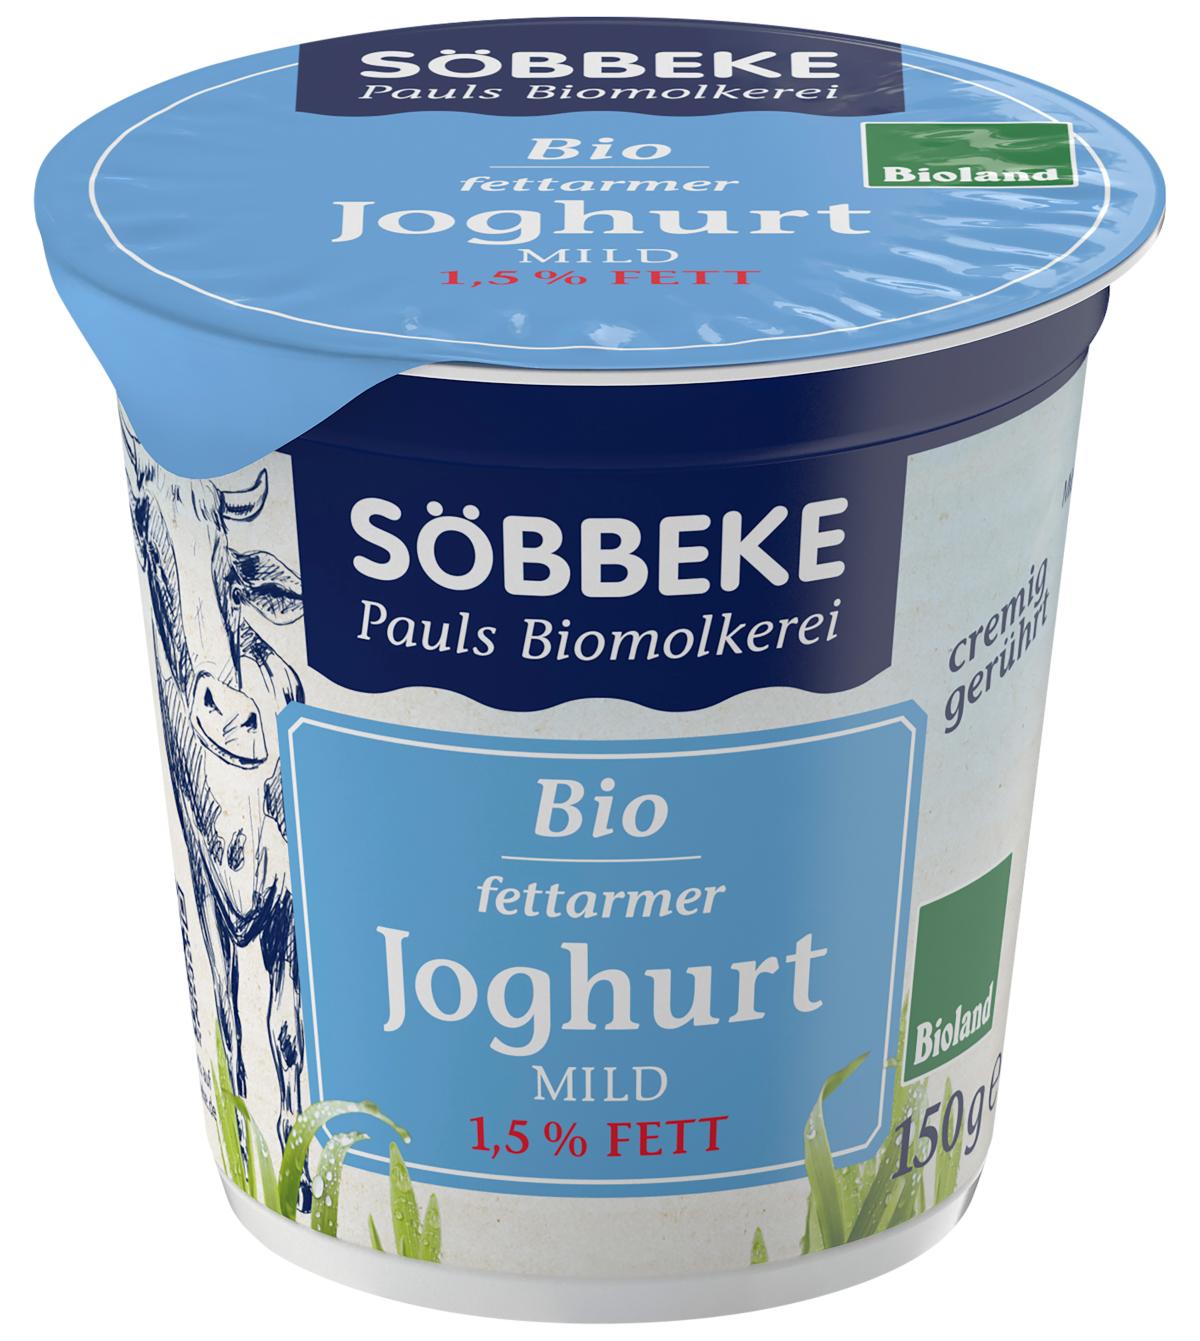 Joghurt natur 1,5% 150g Becher Söbbeke